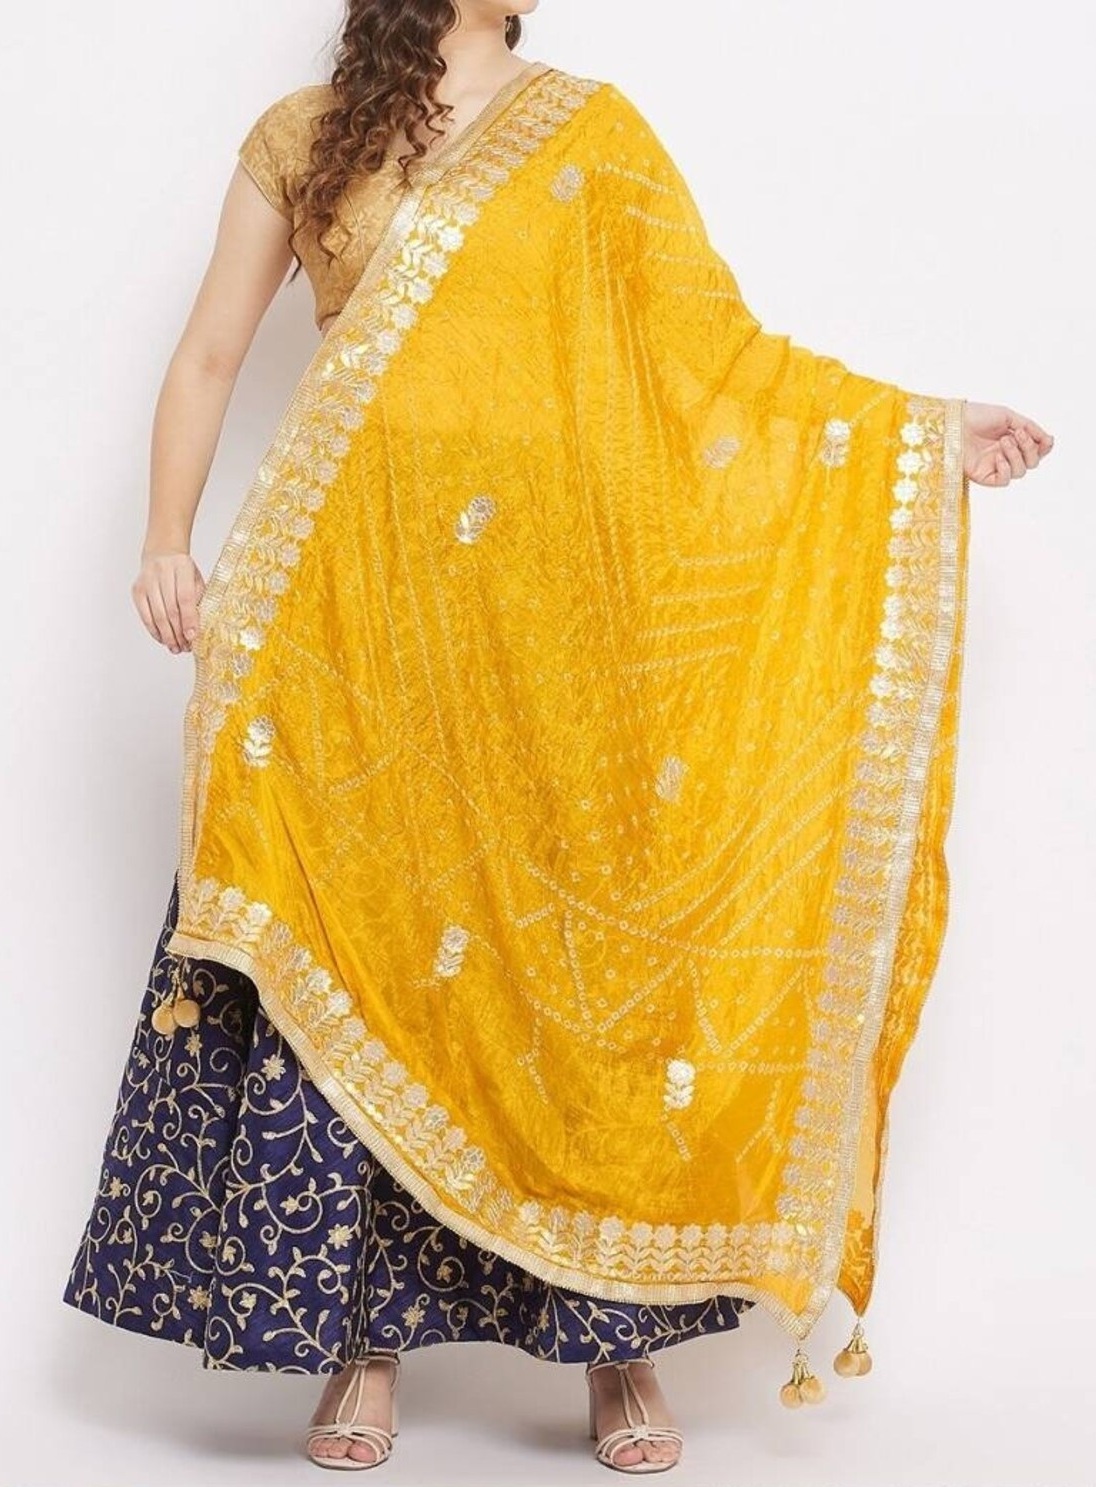 Jaipur 25 Yard Skirt Cotton ATS Gypsy Skirts Belly Dance 25 Yard Skirts Tie  & Dye Polka Dot 25 Yard Skirts Jaipur Bandhani 25 Yard Skirts - Etsy